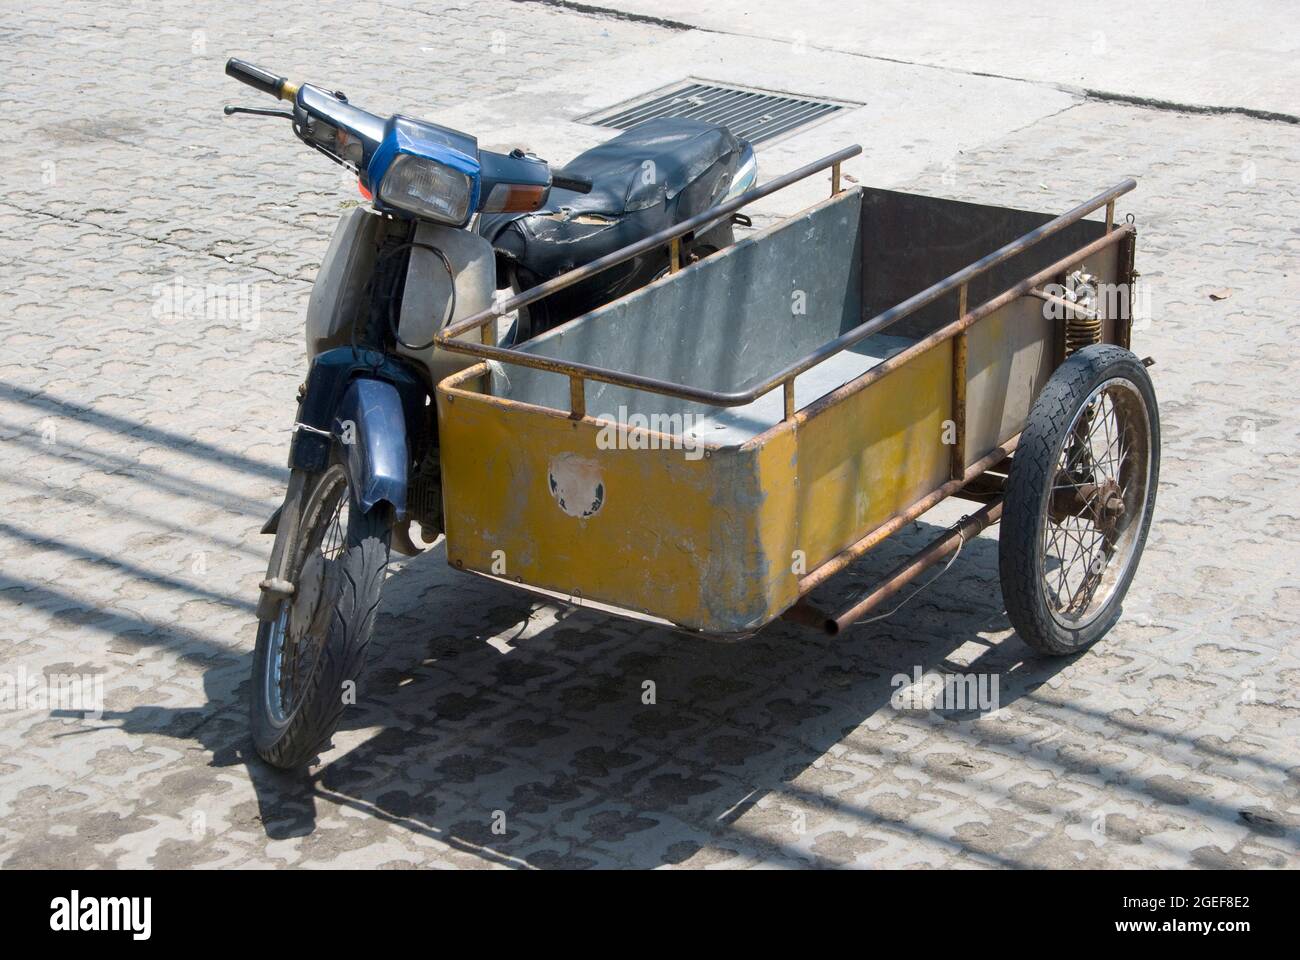 Ciclomotor sidecar típico asiático estacionado Foto de stock